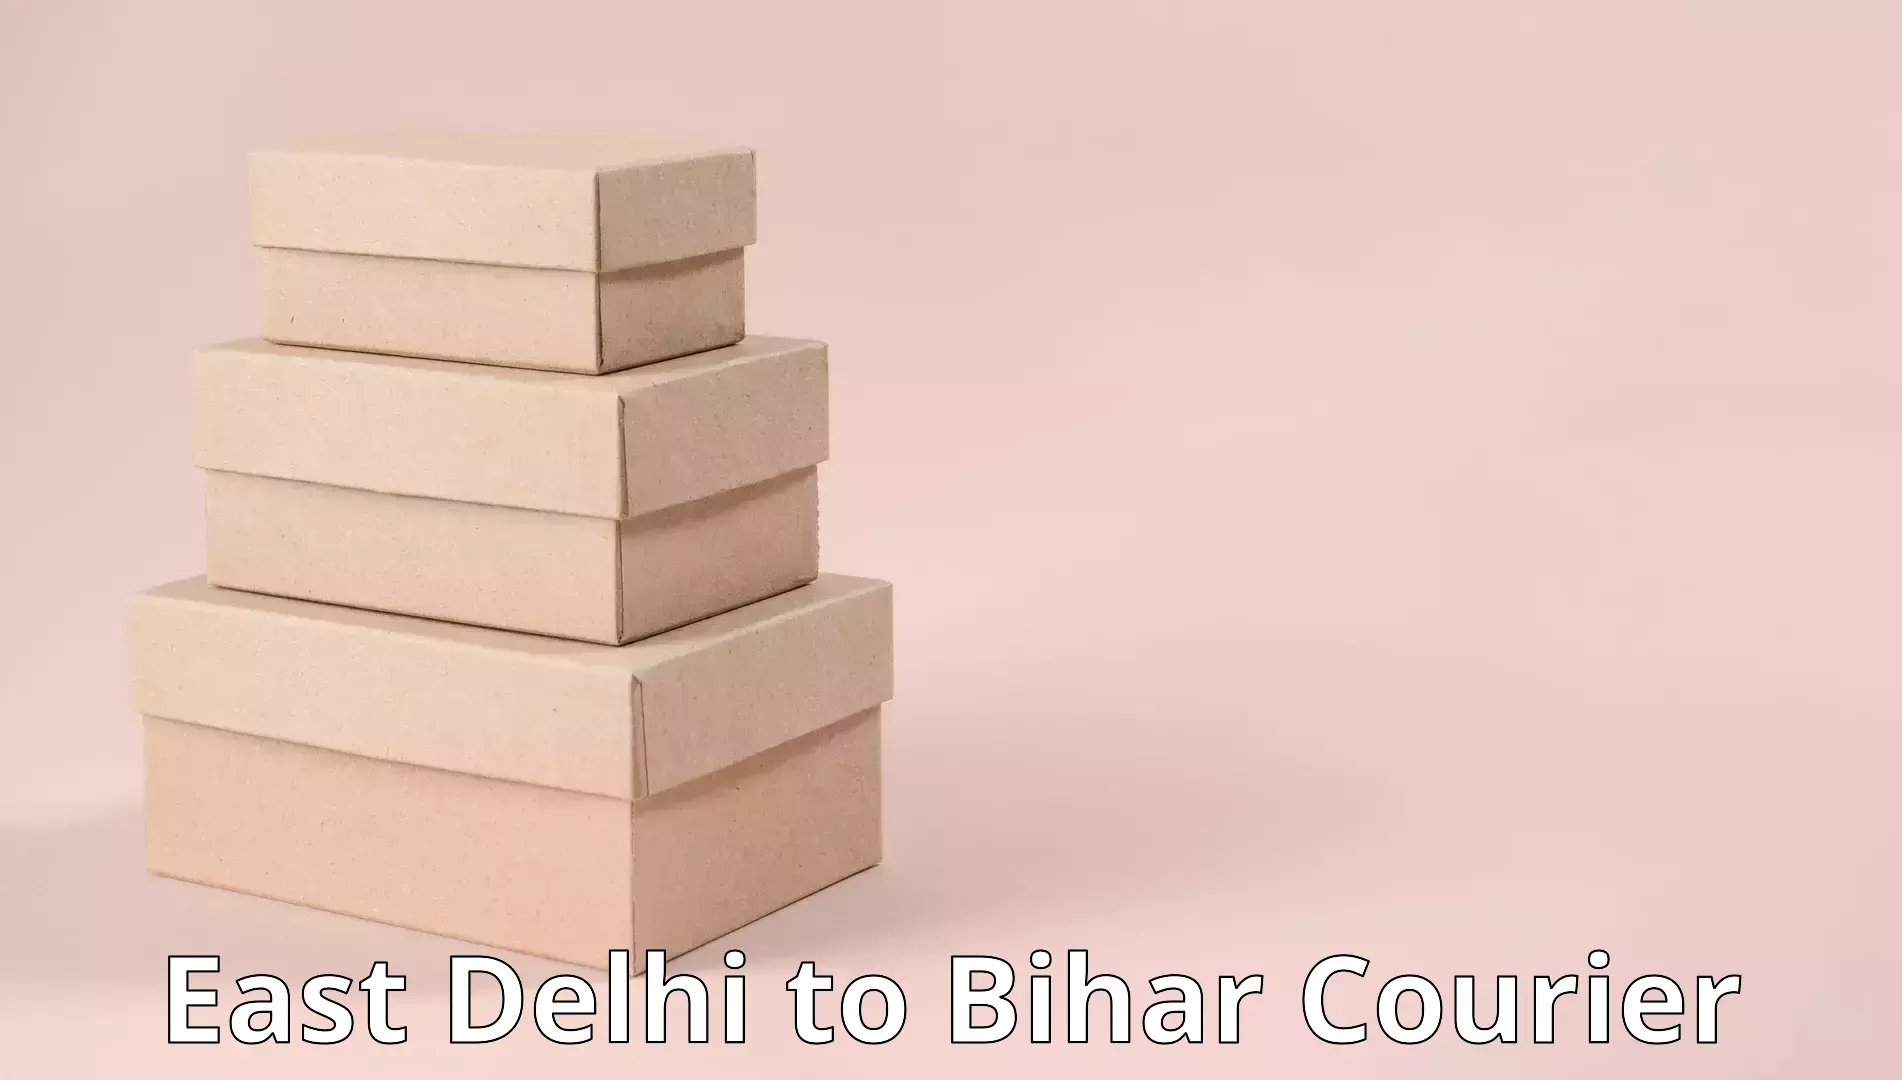 Flexible moving solutions East Delhi to Bihar